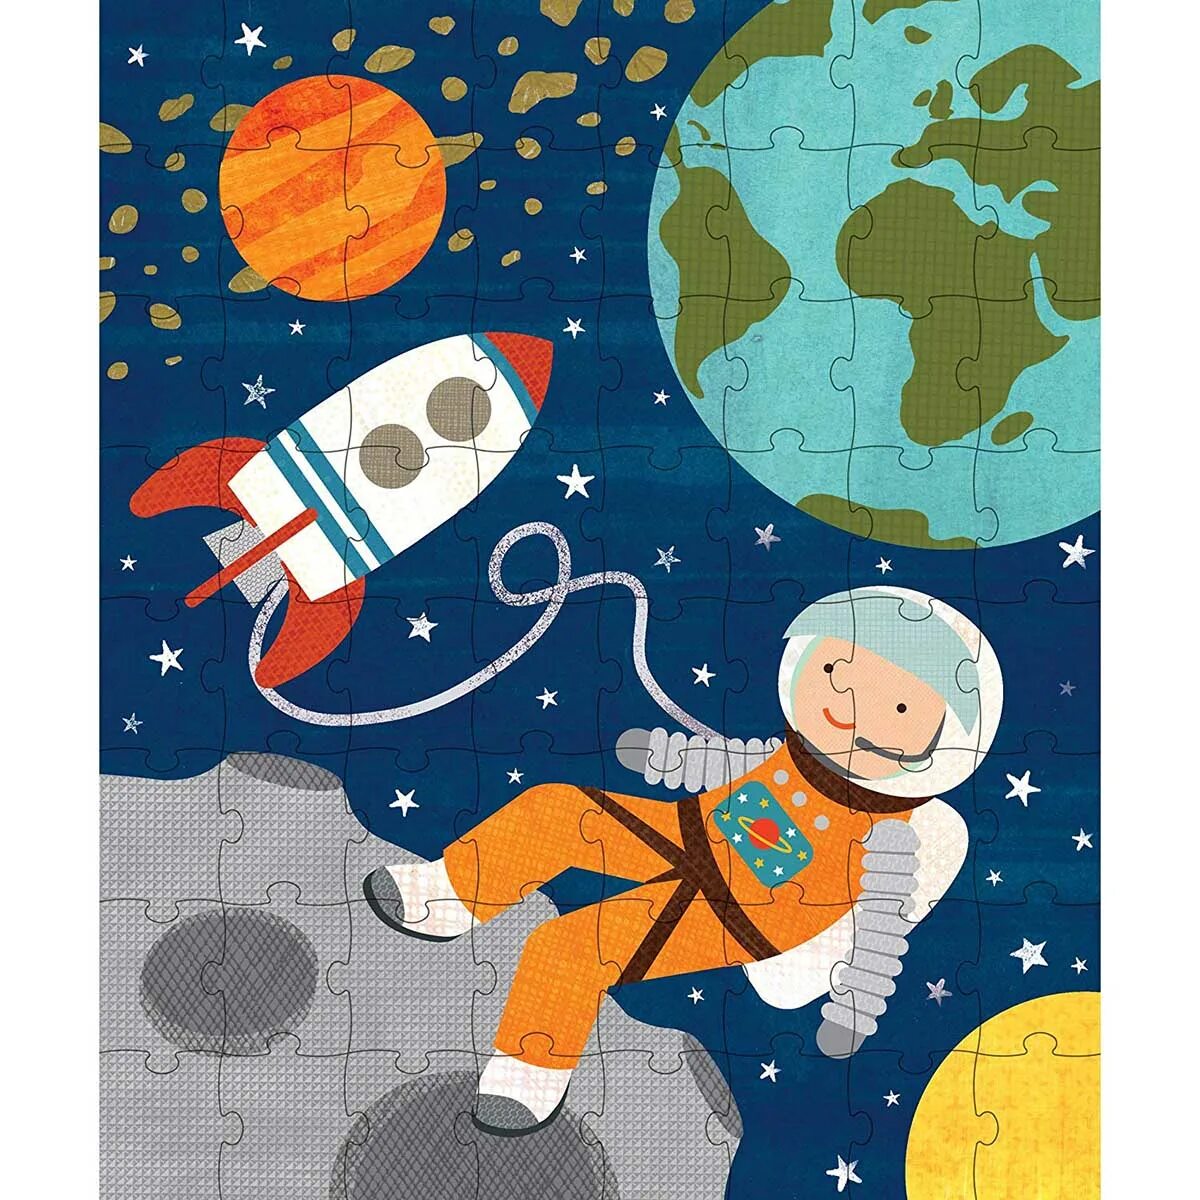 Пазлы космос для детей. Пазлы на тему космос для детей. Пазлы про космос для дошкольников. Космос для детей дошкольного возраста иллюстрации.